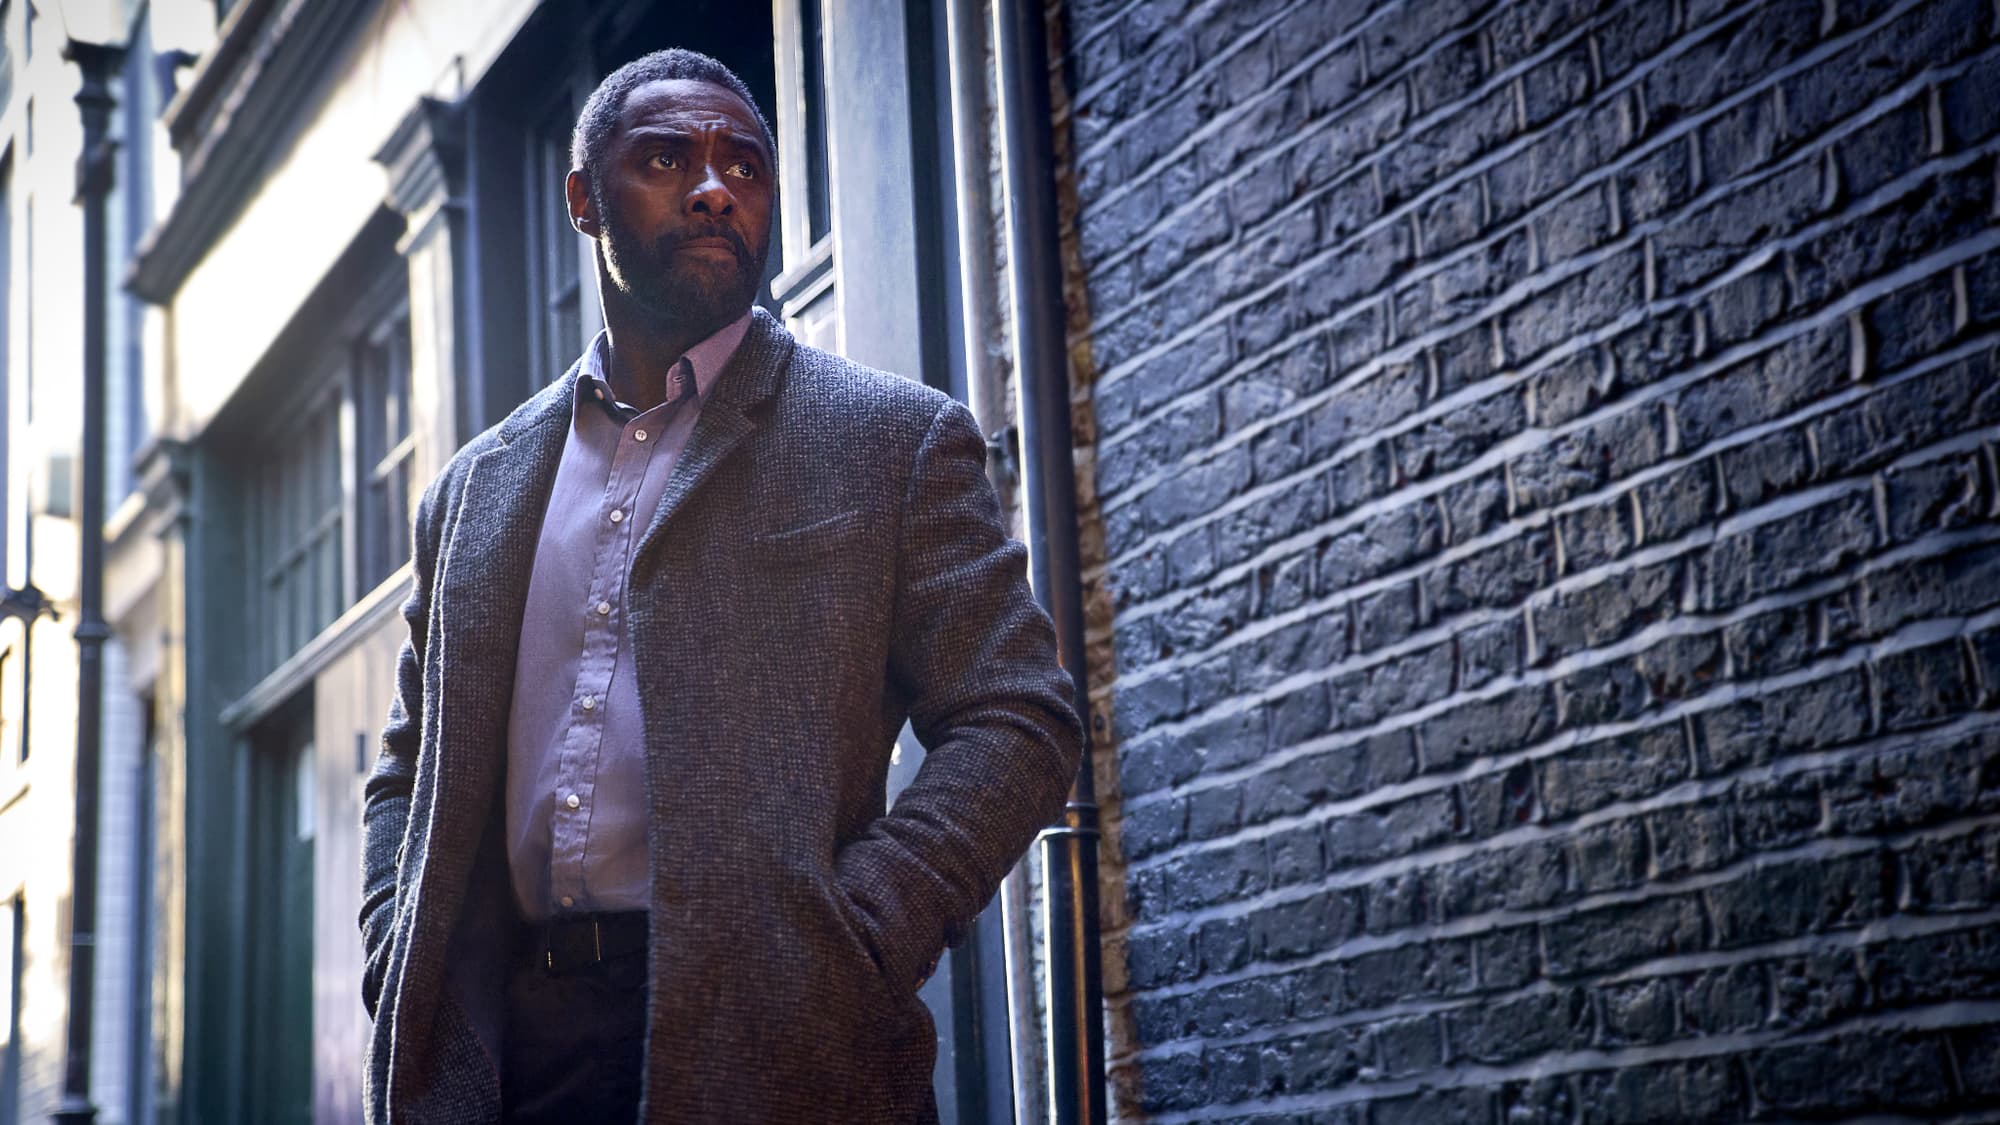 Netflix : ce western avec Idris Elba qui dépoussière le genre - Actus Ciné  - AlloCiné